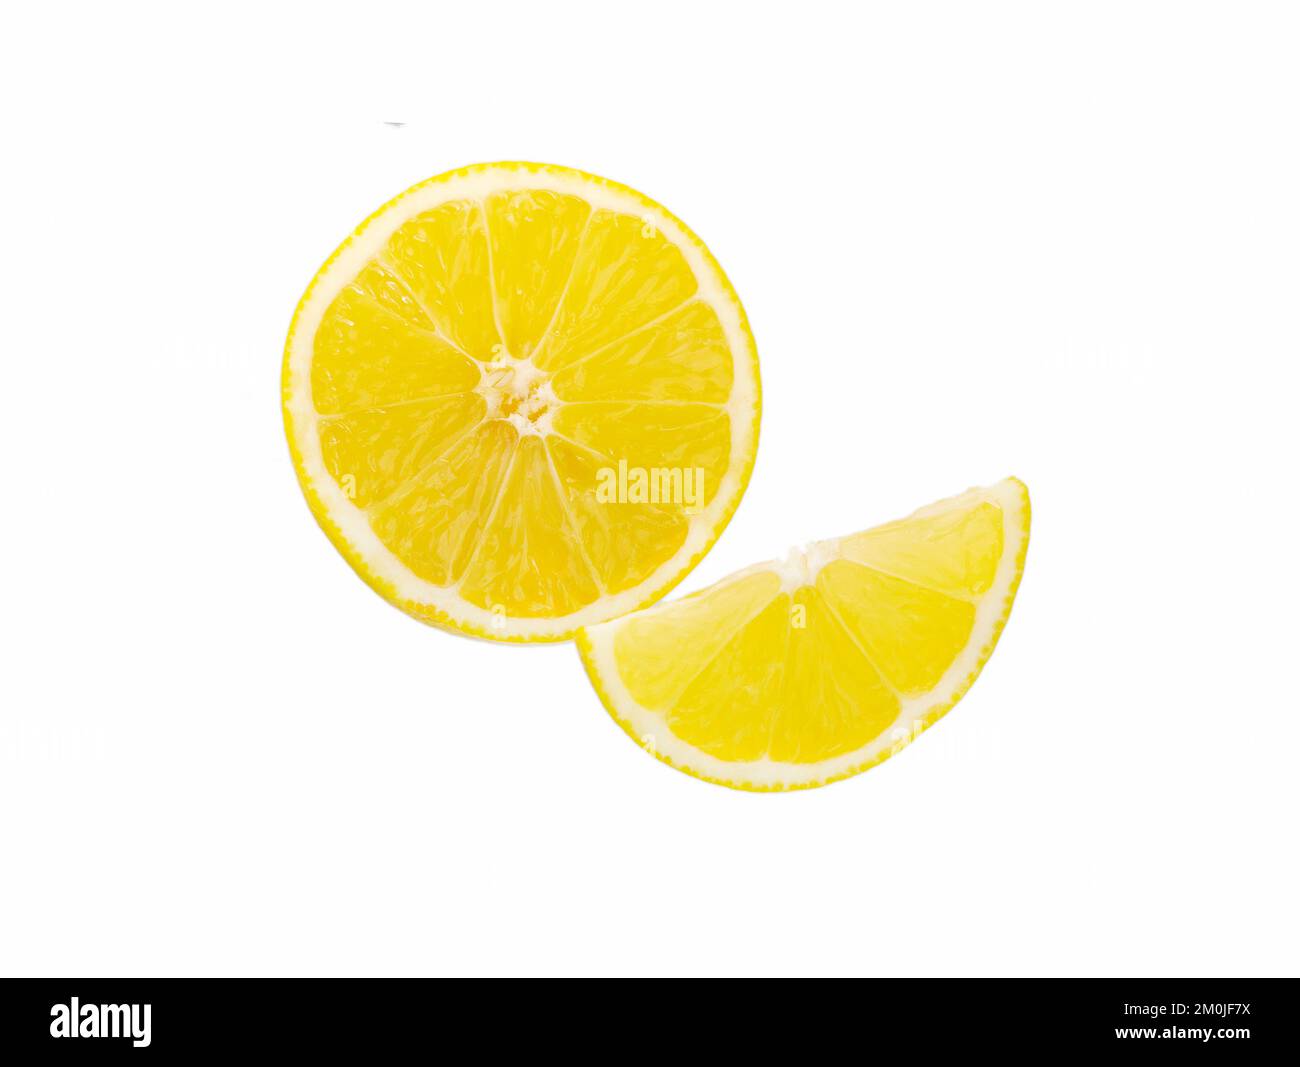 Slice of citrus fruit isolated on white background. lemon slices Stock Photo